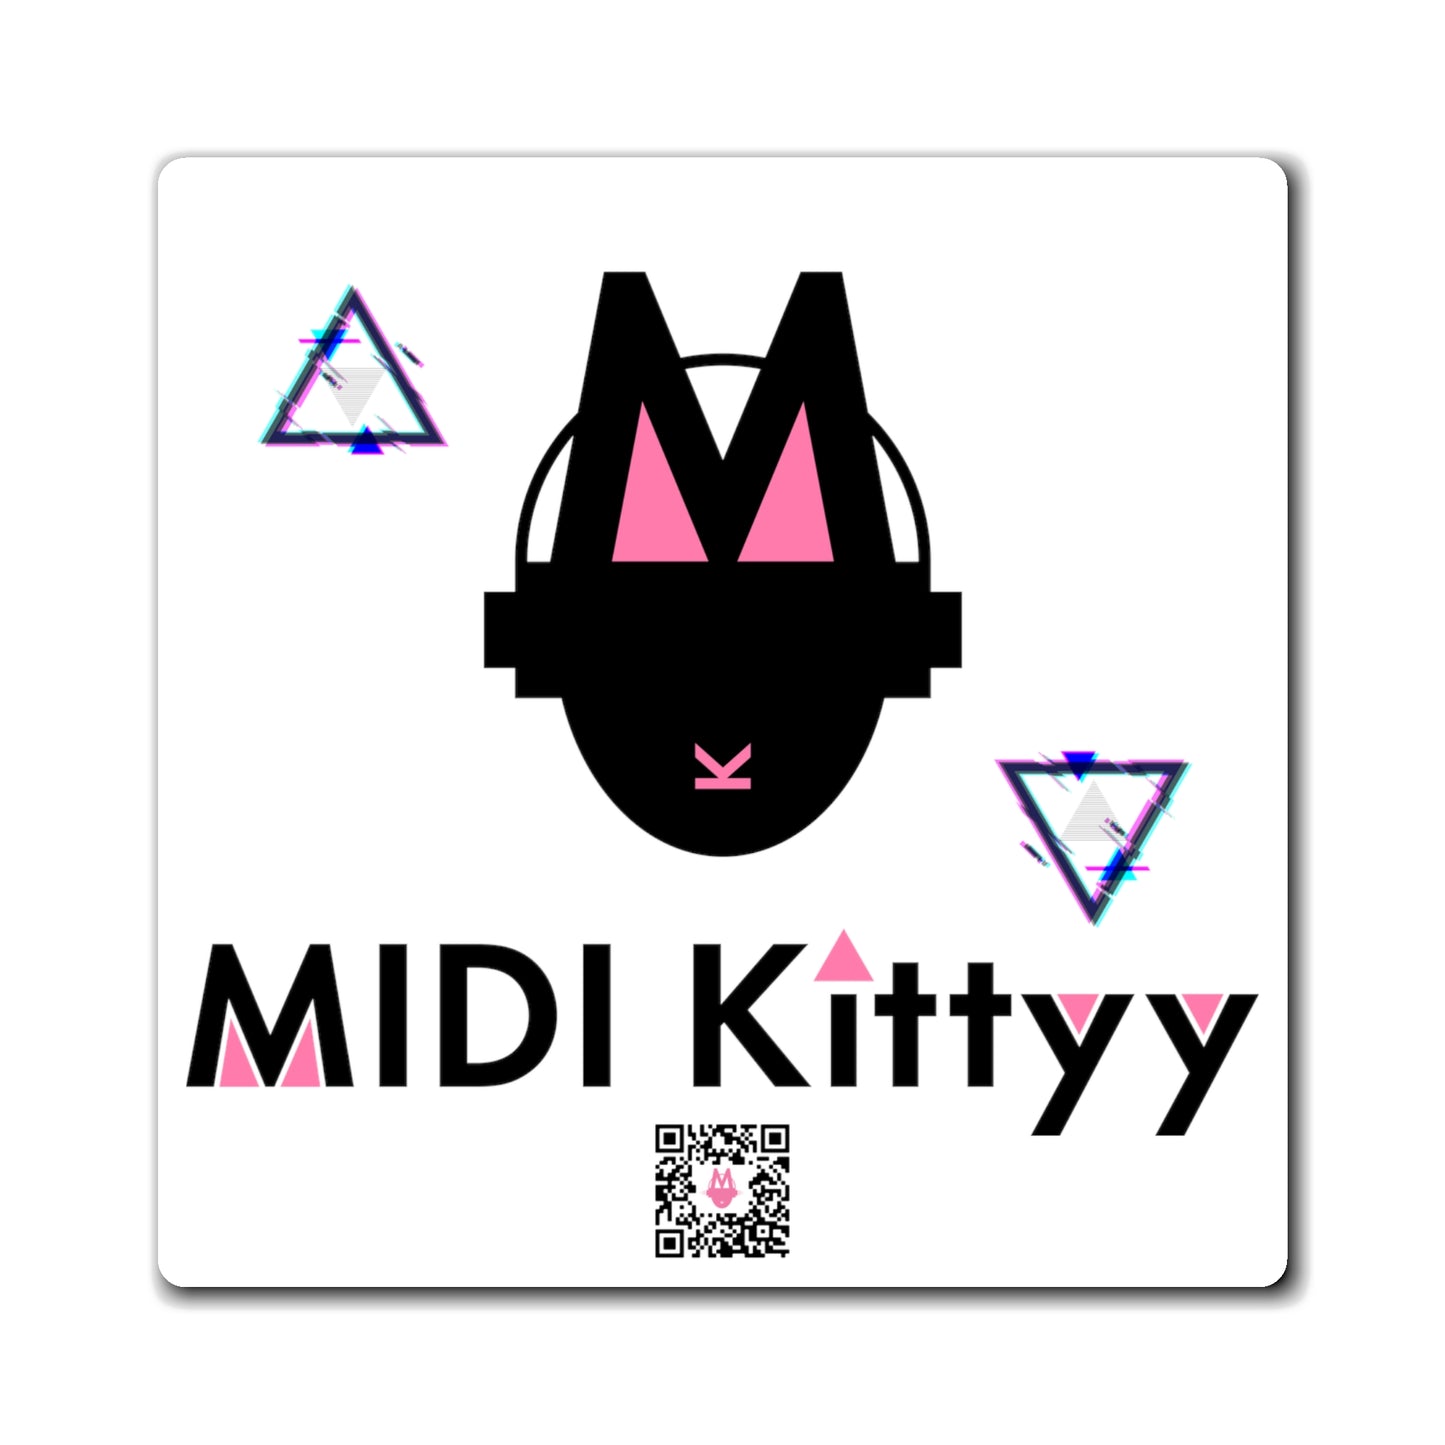 MIDI Kittyy Magnet